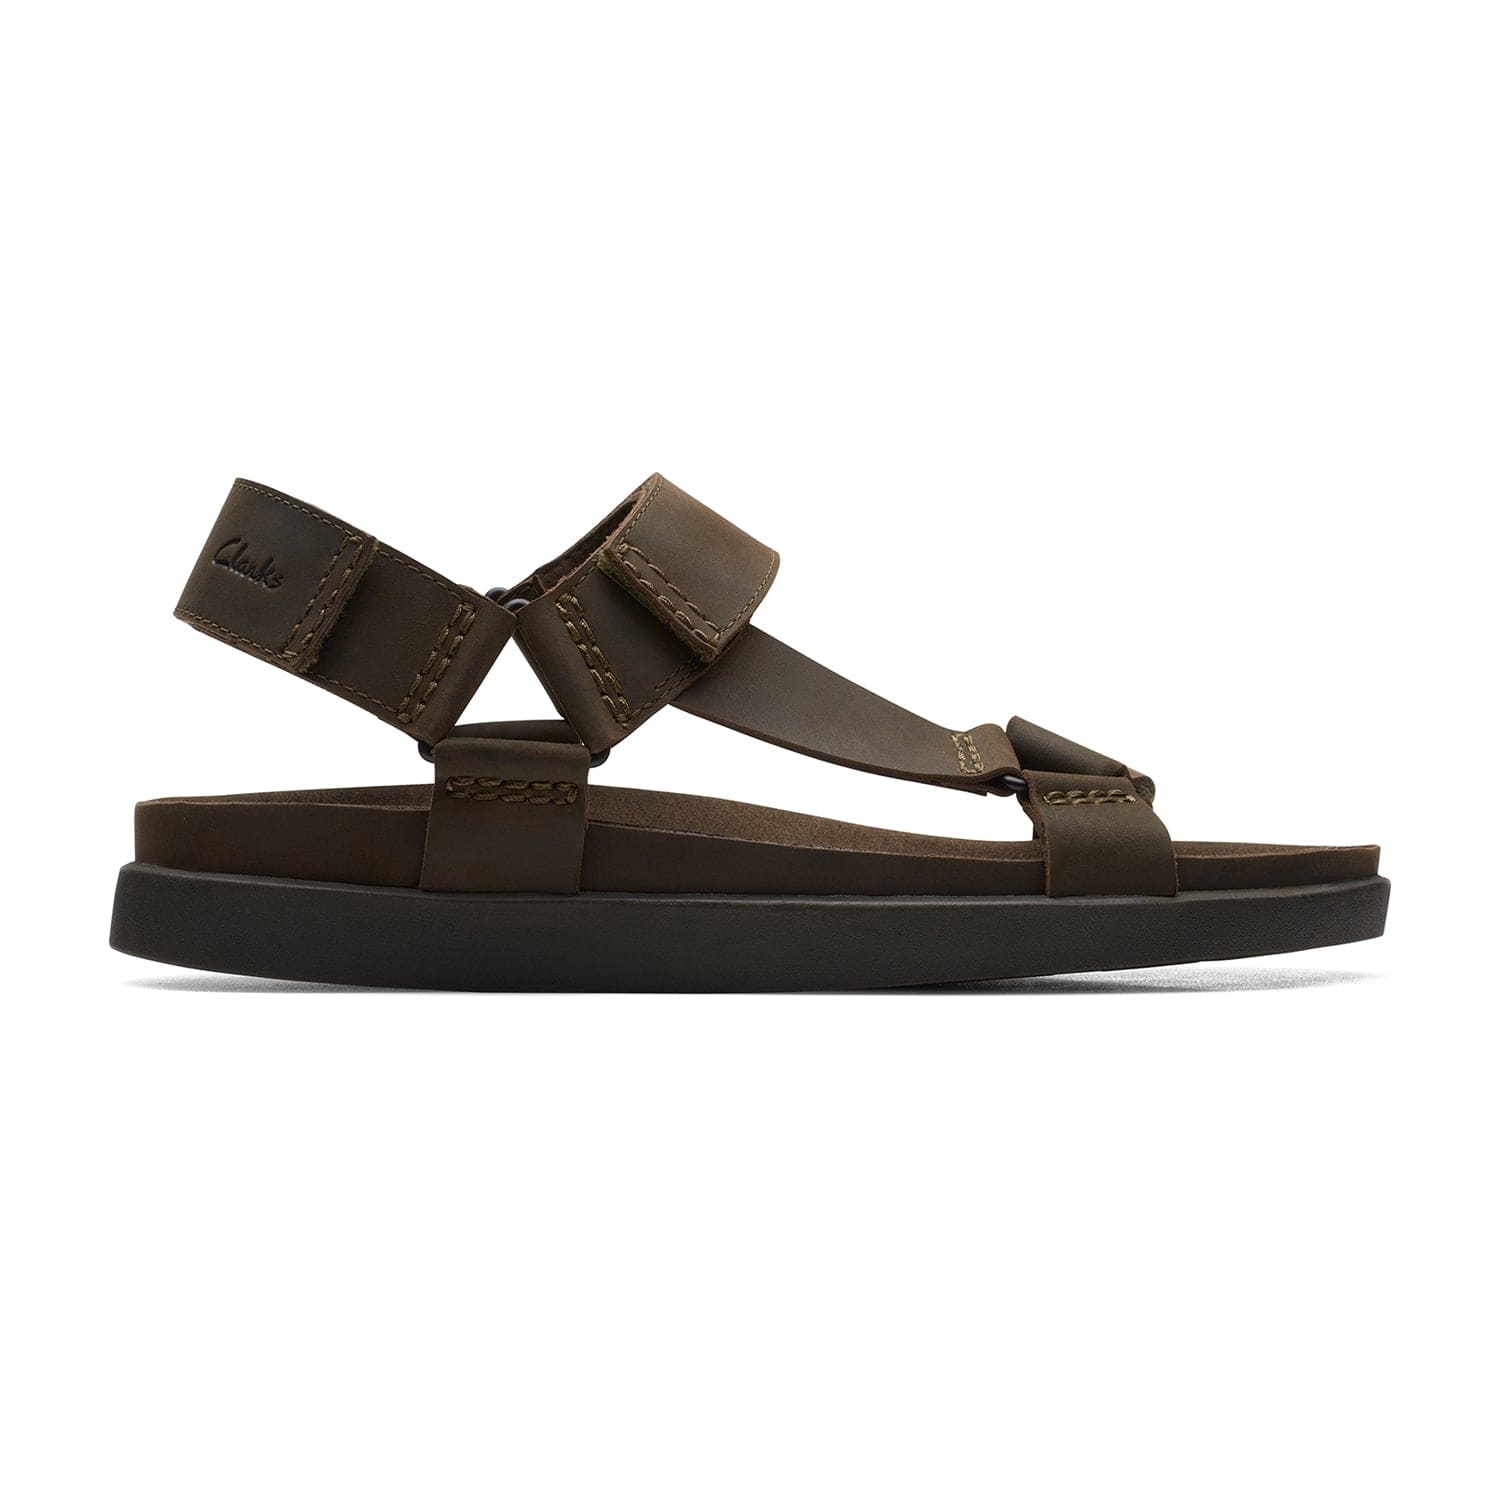 Clarks Sunder Range Sandals - Dark Olive Lea - 261718877 - G Width (Standard Fit)